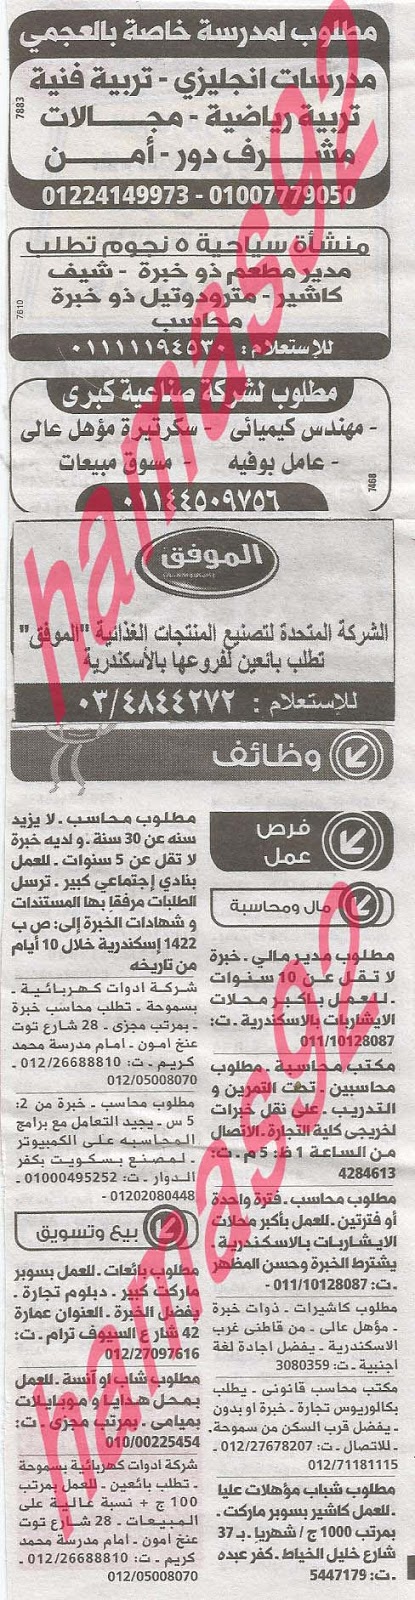 وظائف خالية فى جريدة الوسيط الاسكندرية السبت 24-08-2013 %D9%88+%D8%B3+%D8%B3+3